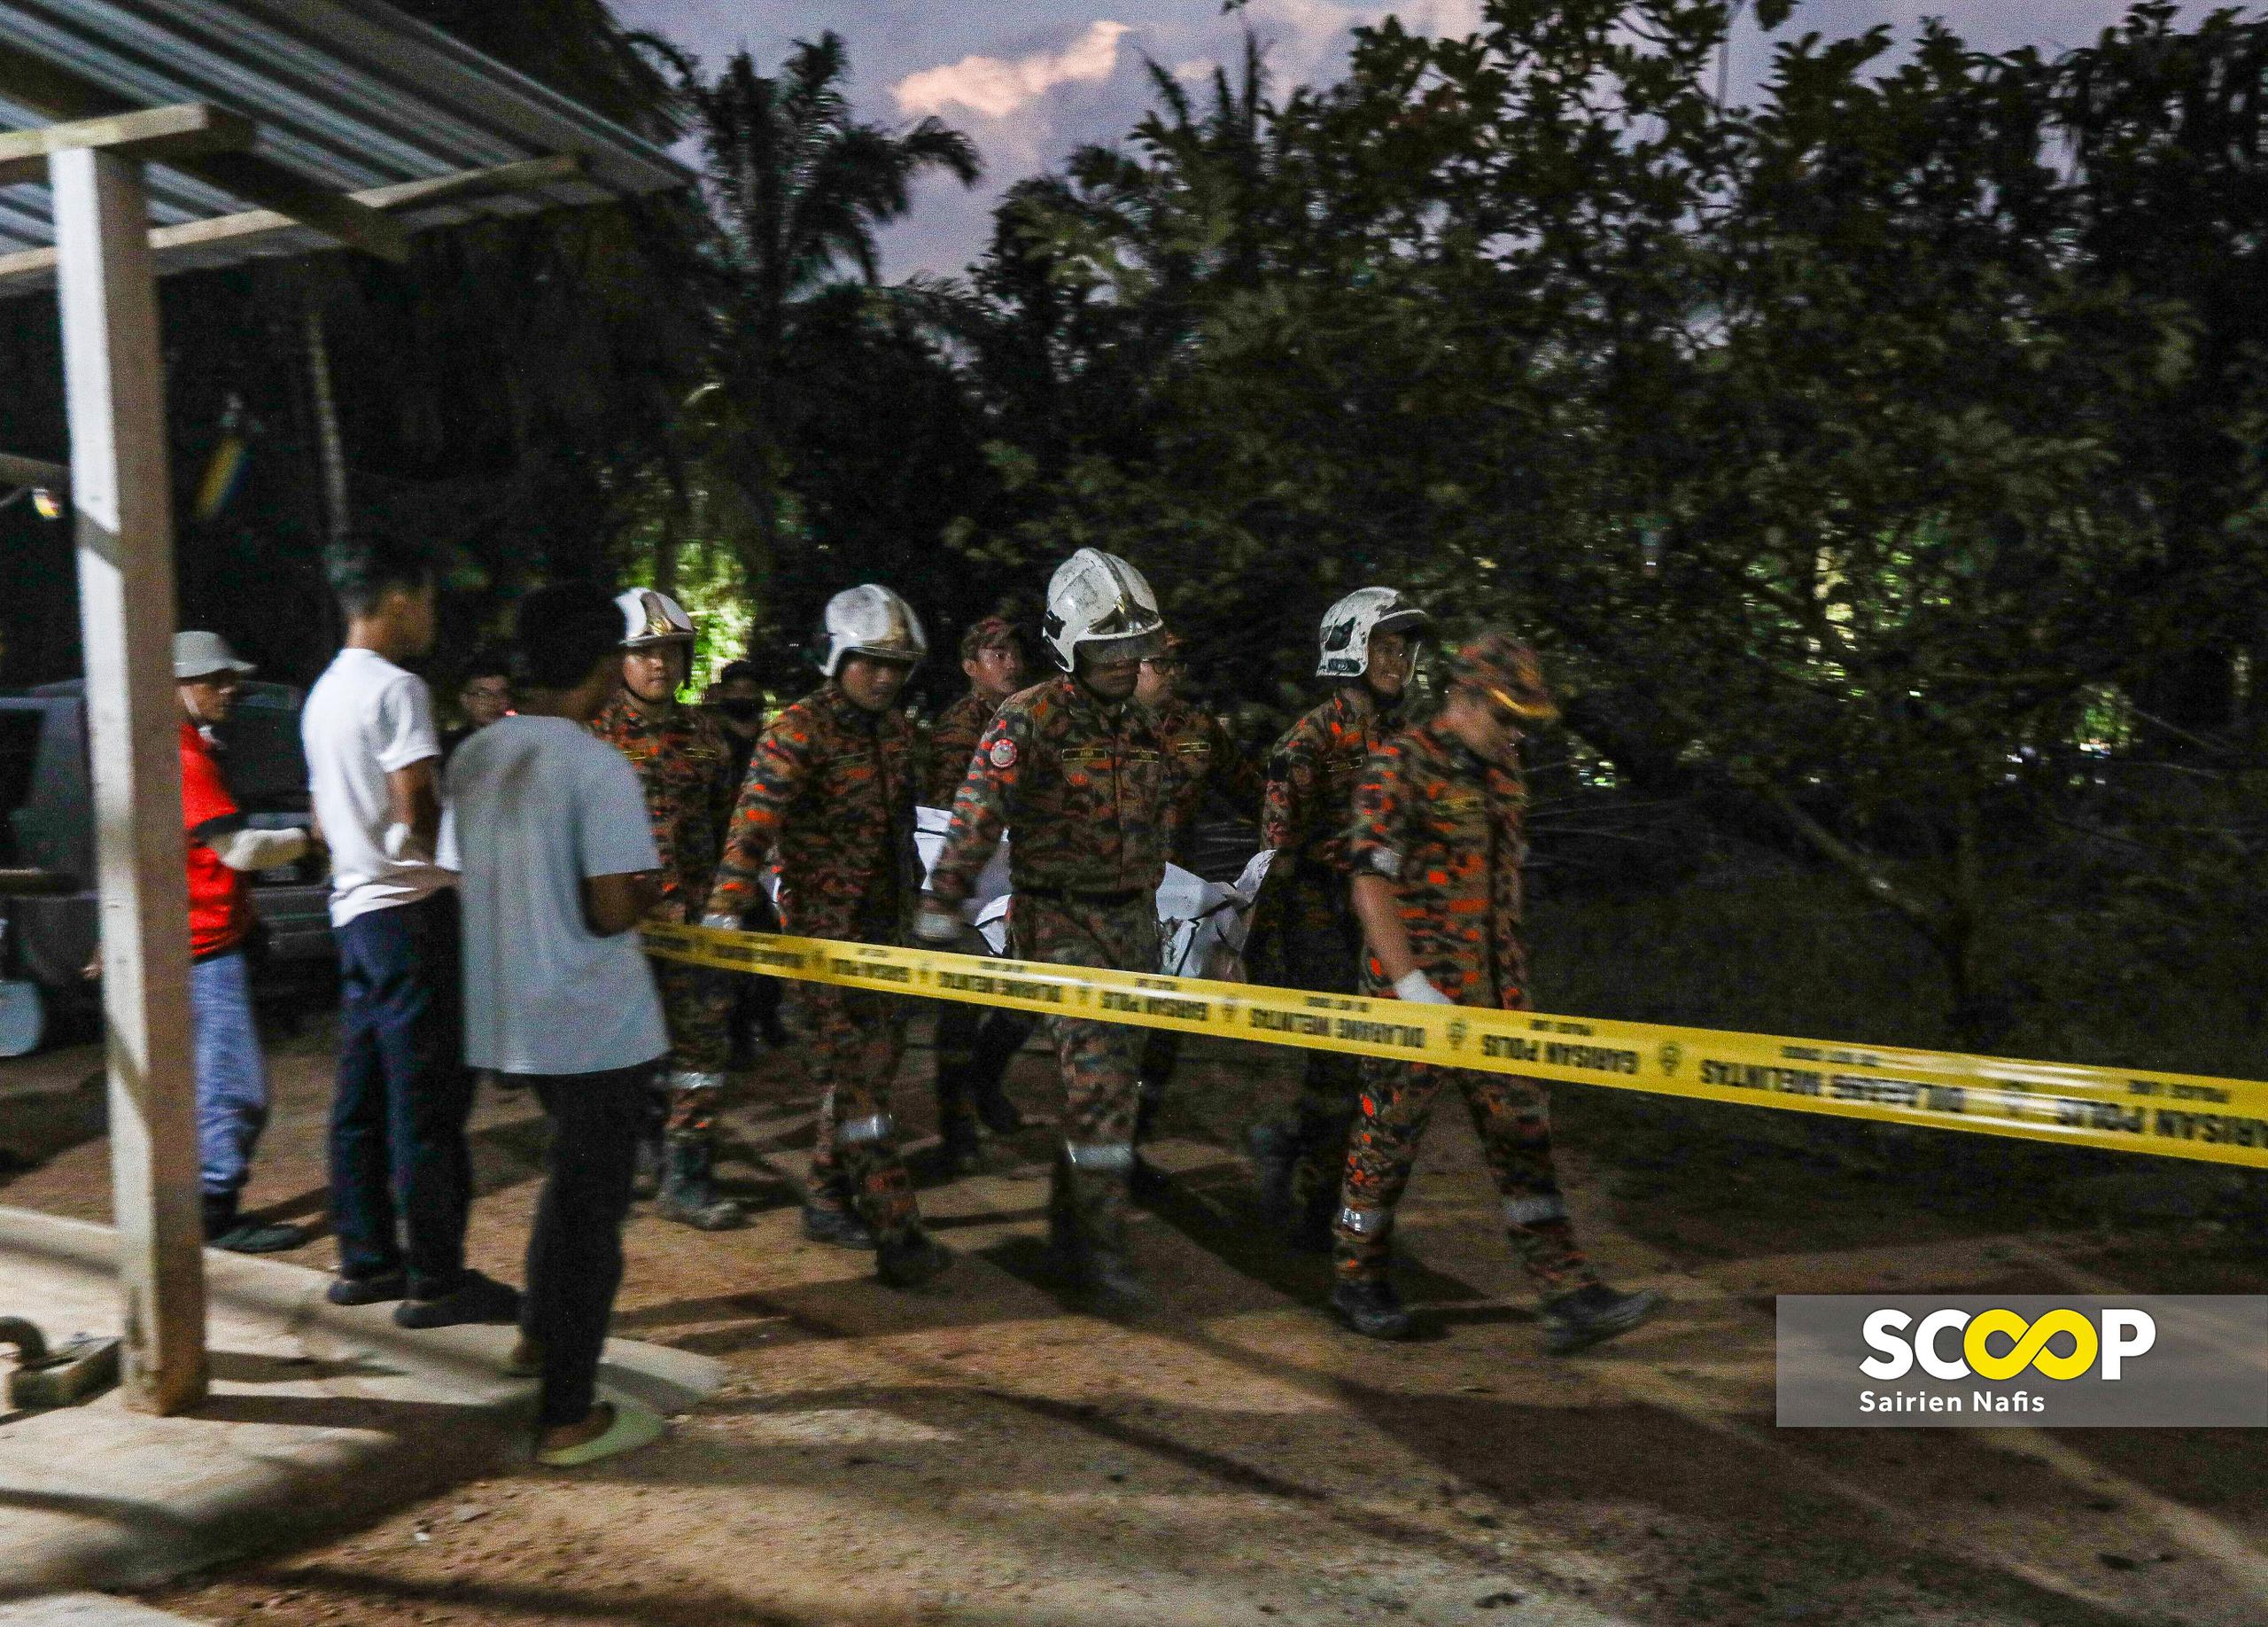 [UPDATED] Kapar air crash: two victims found dead, buried in wreckage 2m underground 